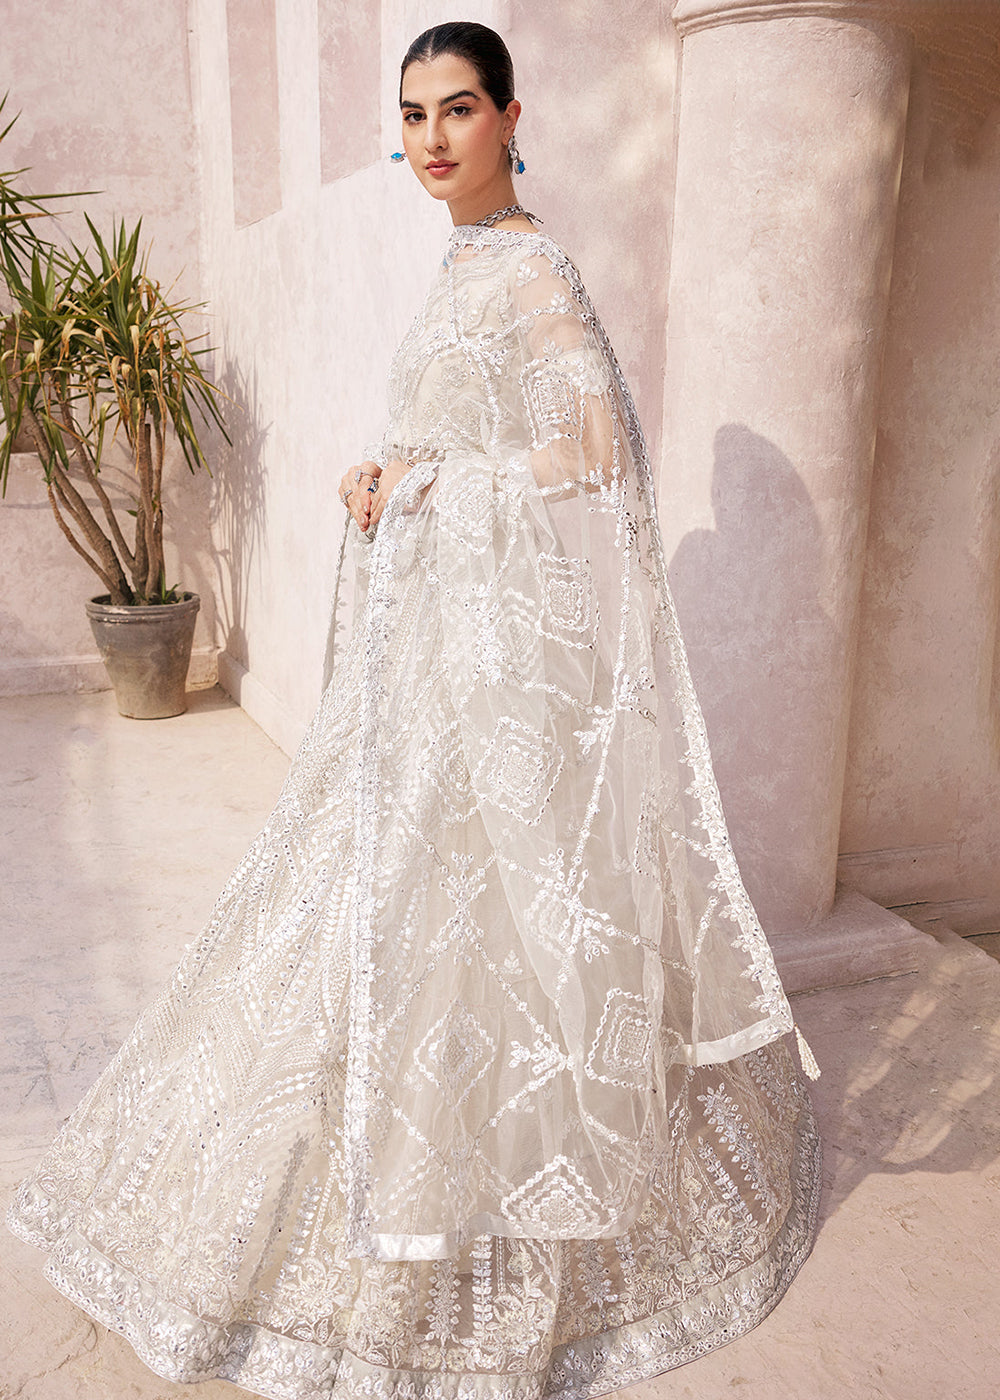 Buy Now Ivory Lehenga Choli | Emaan Adeel | Mirha Wedding Edition '23 | MH-201 Online in USA, UK, Canada & Worldwide at Empress Clothing.